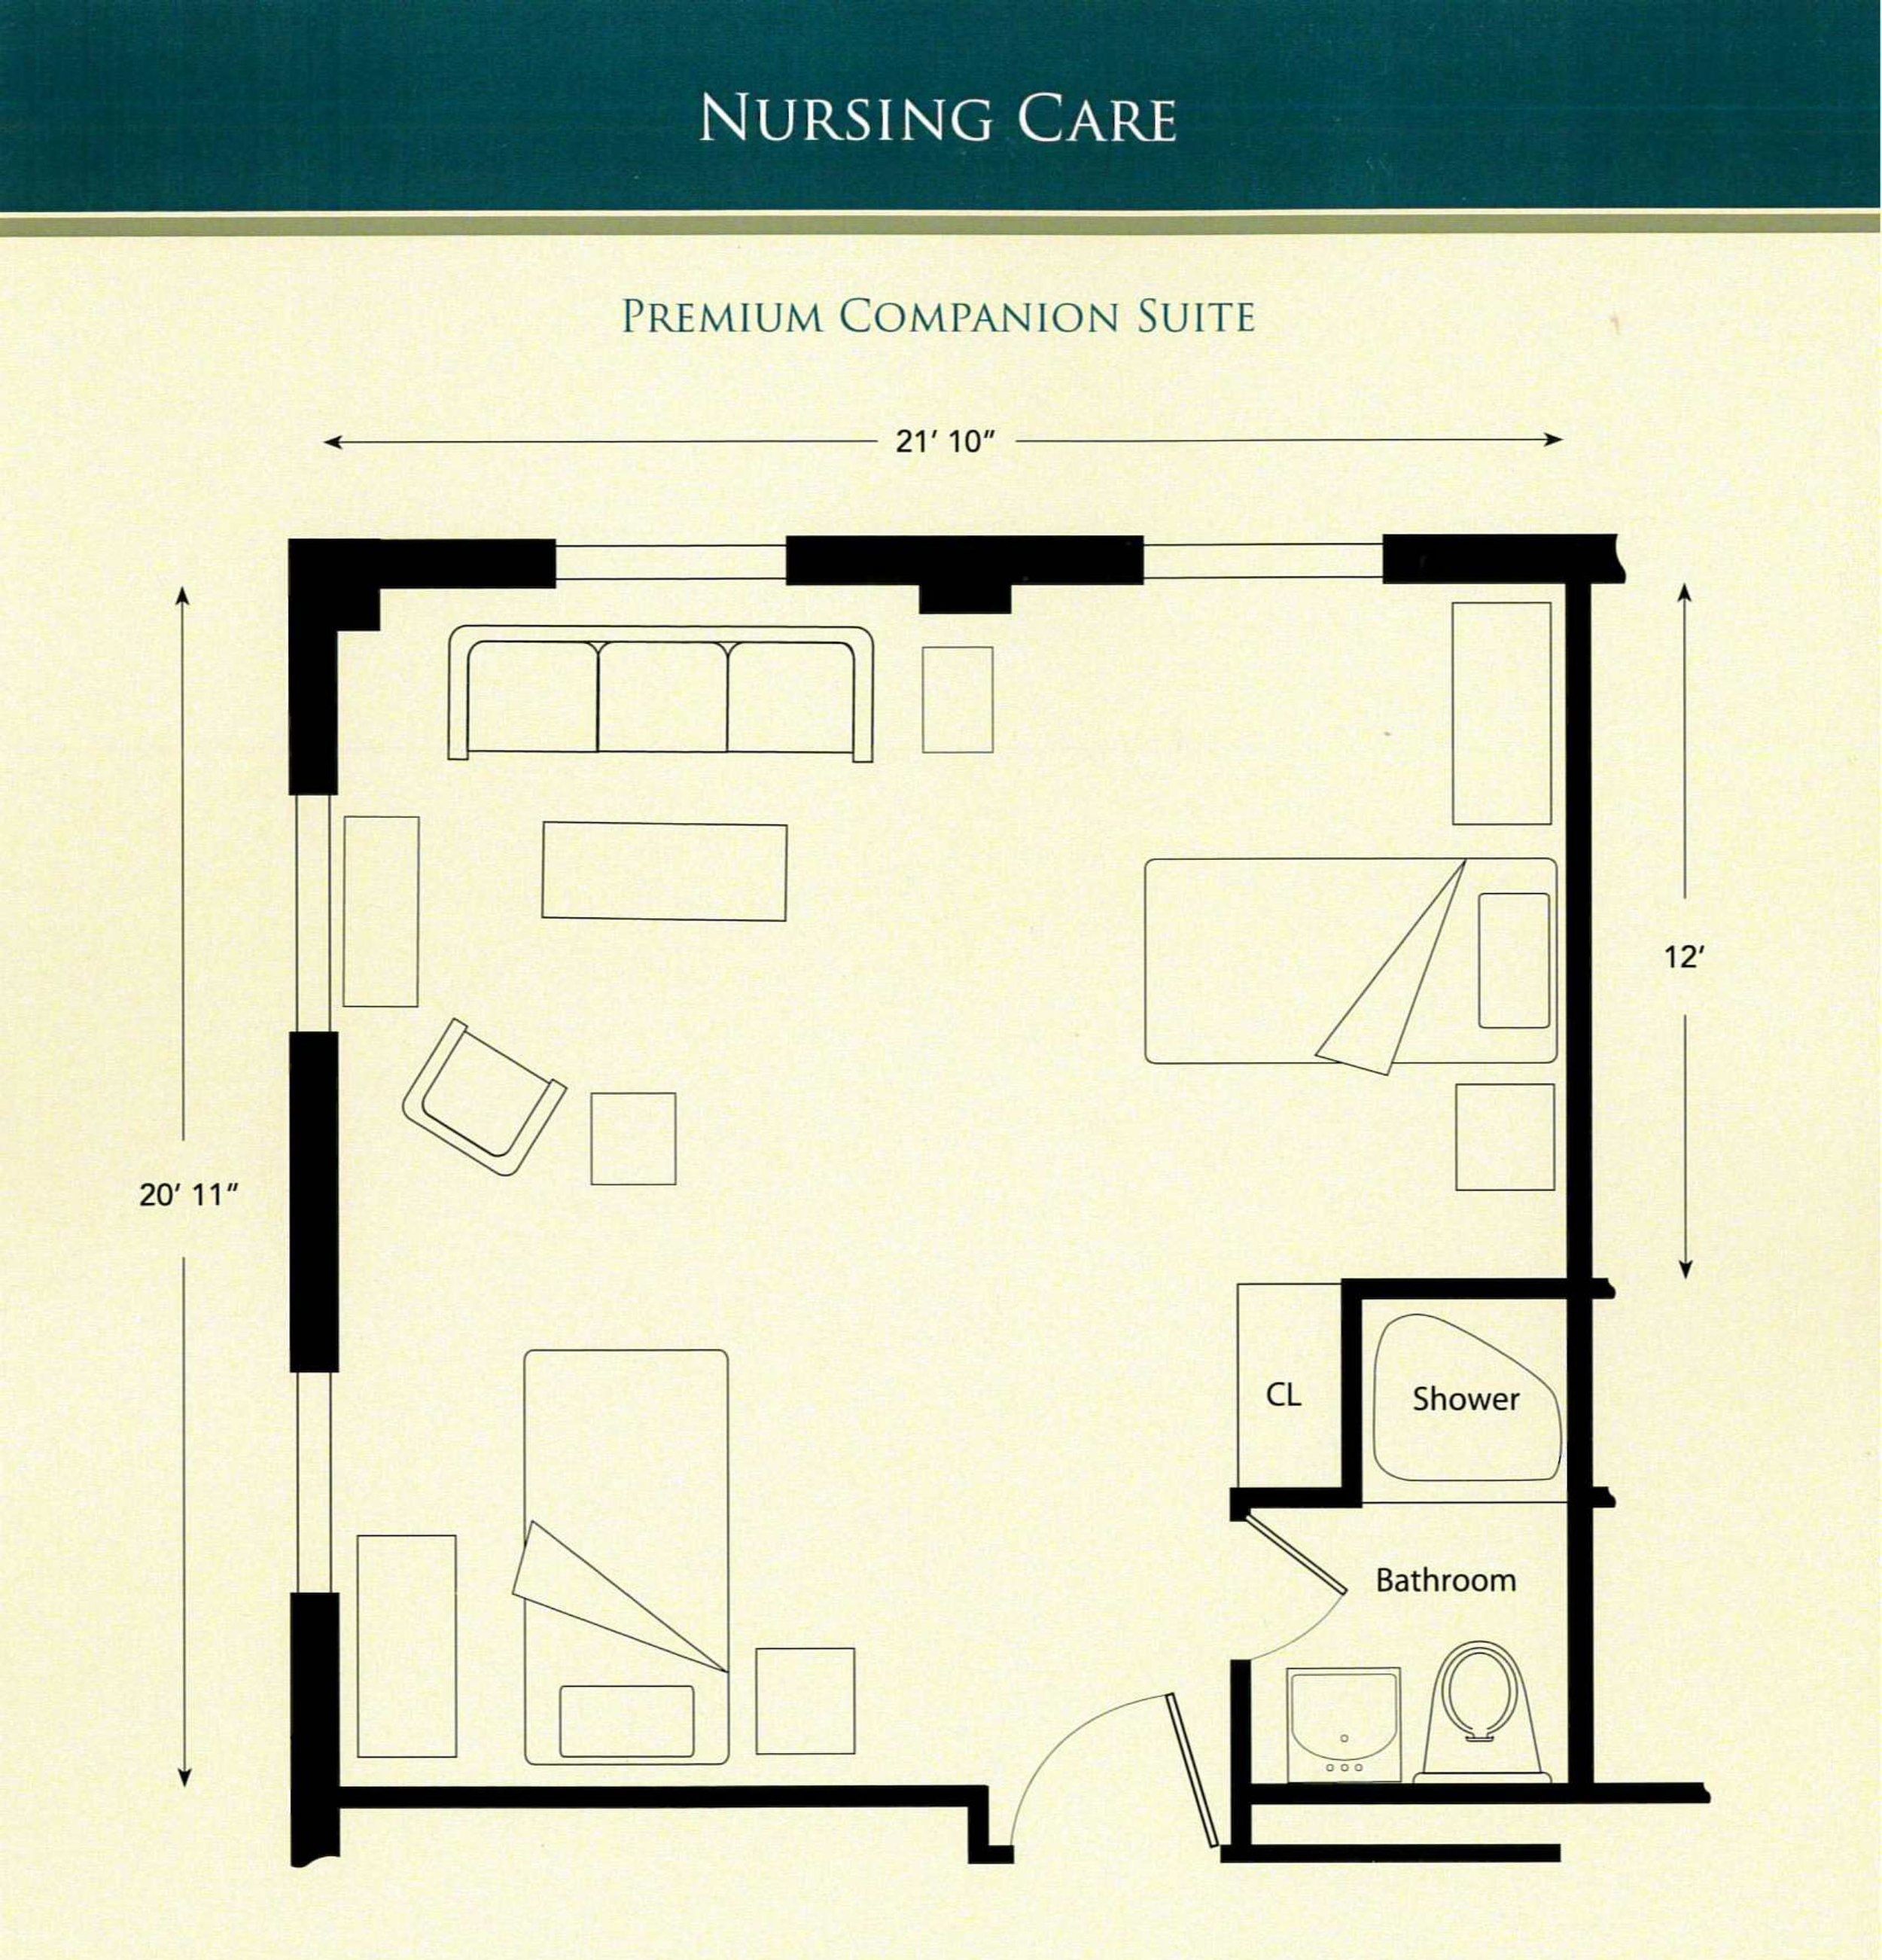 Nursing Care Premium Companion Suite